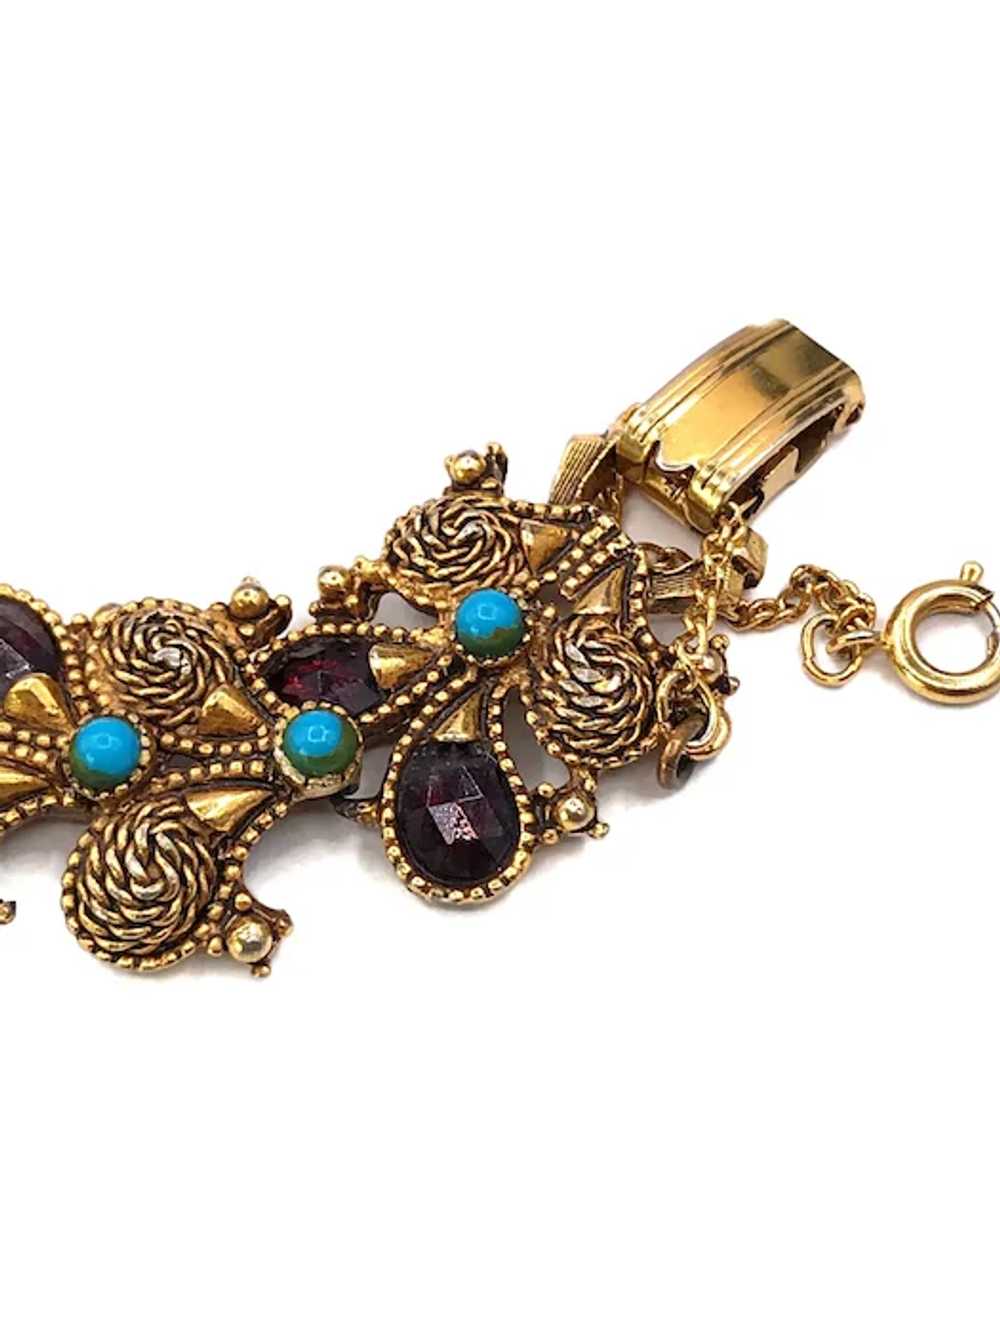 Vintage Florenza Link Bracelet - image 3